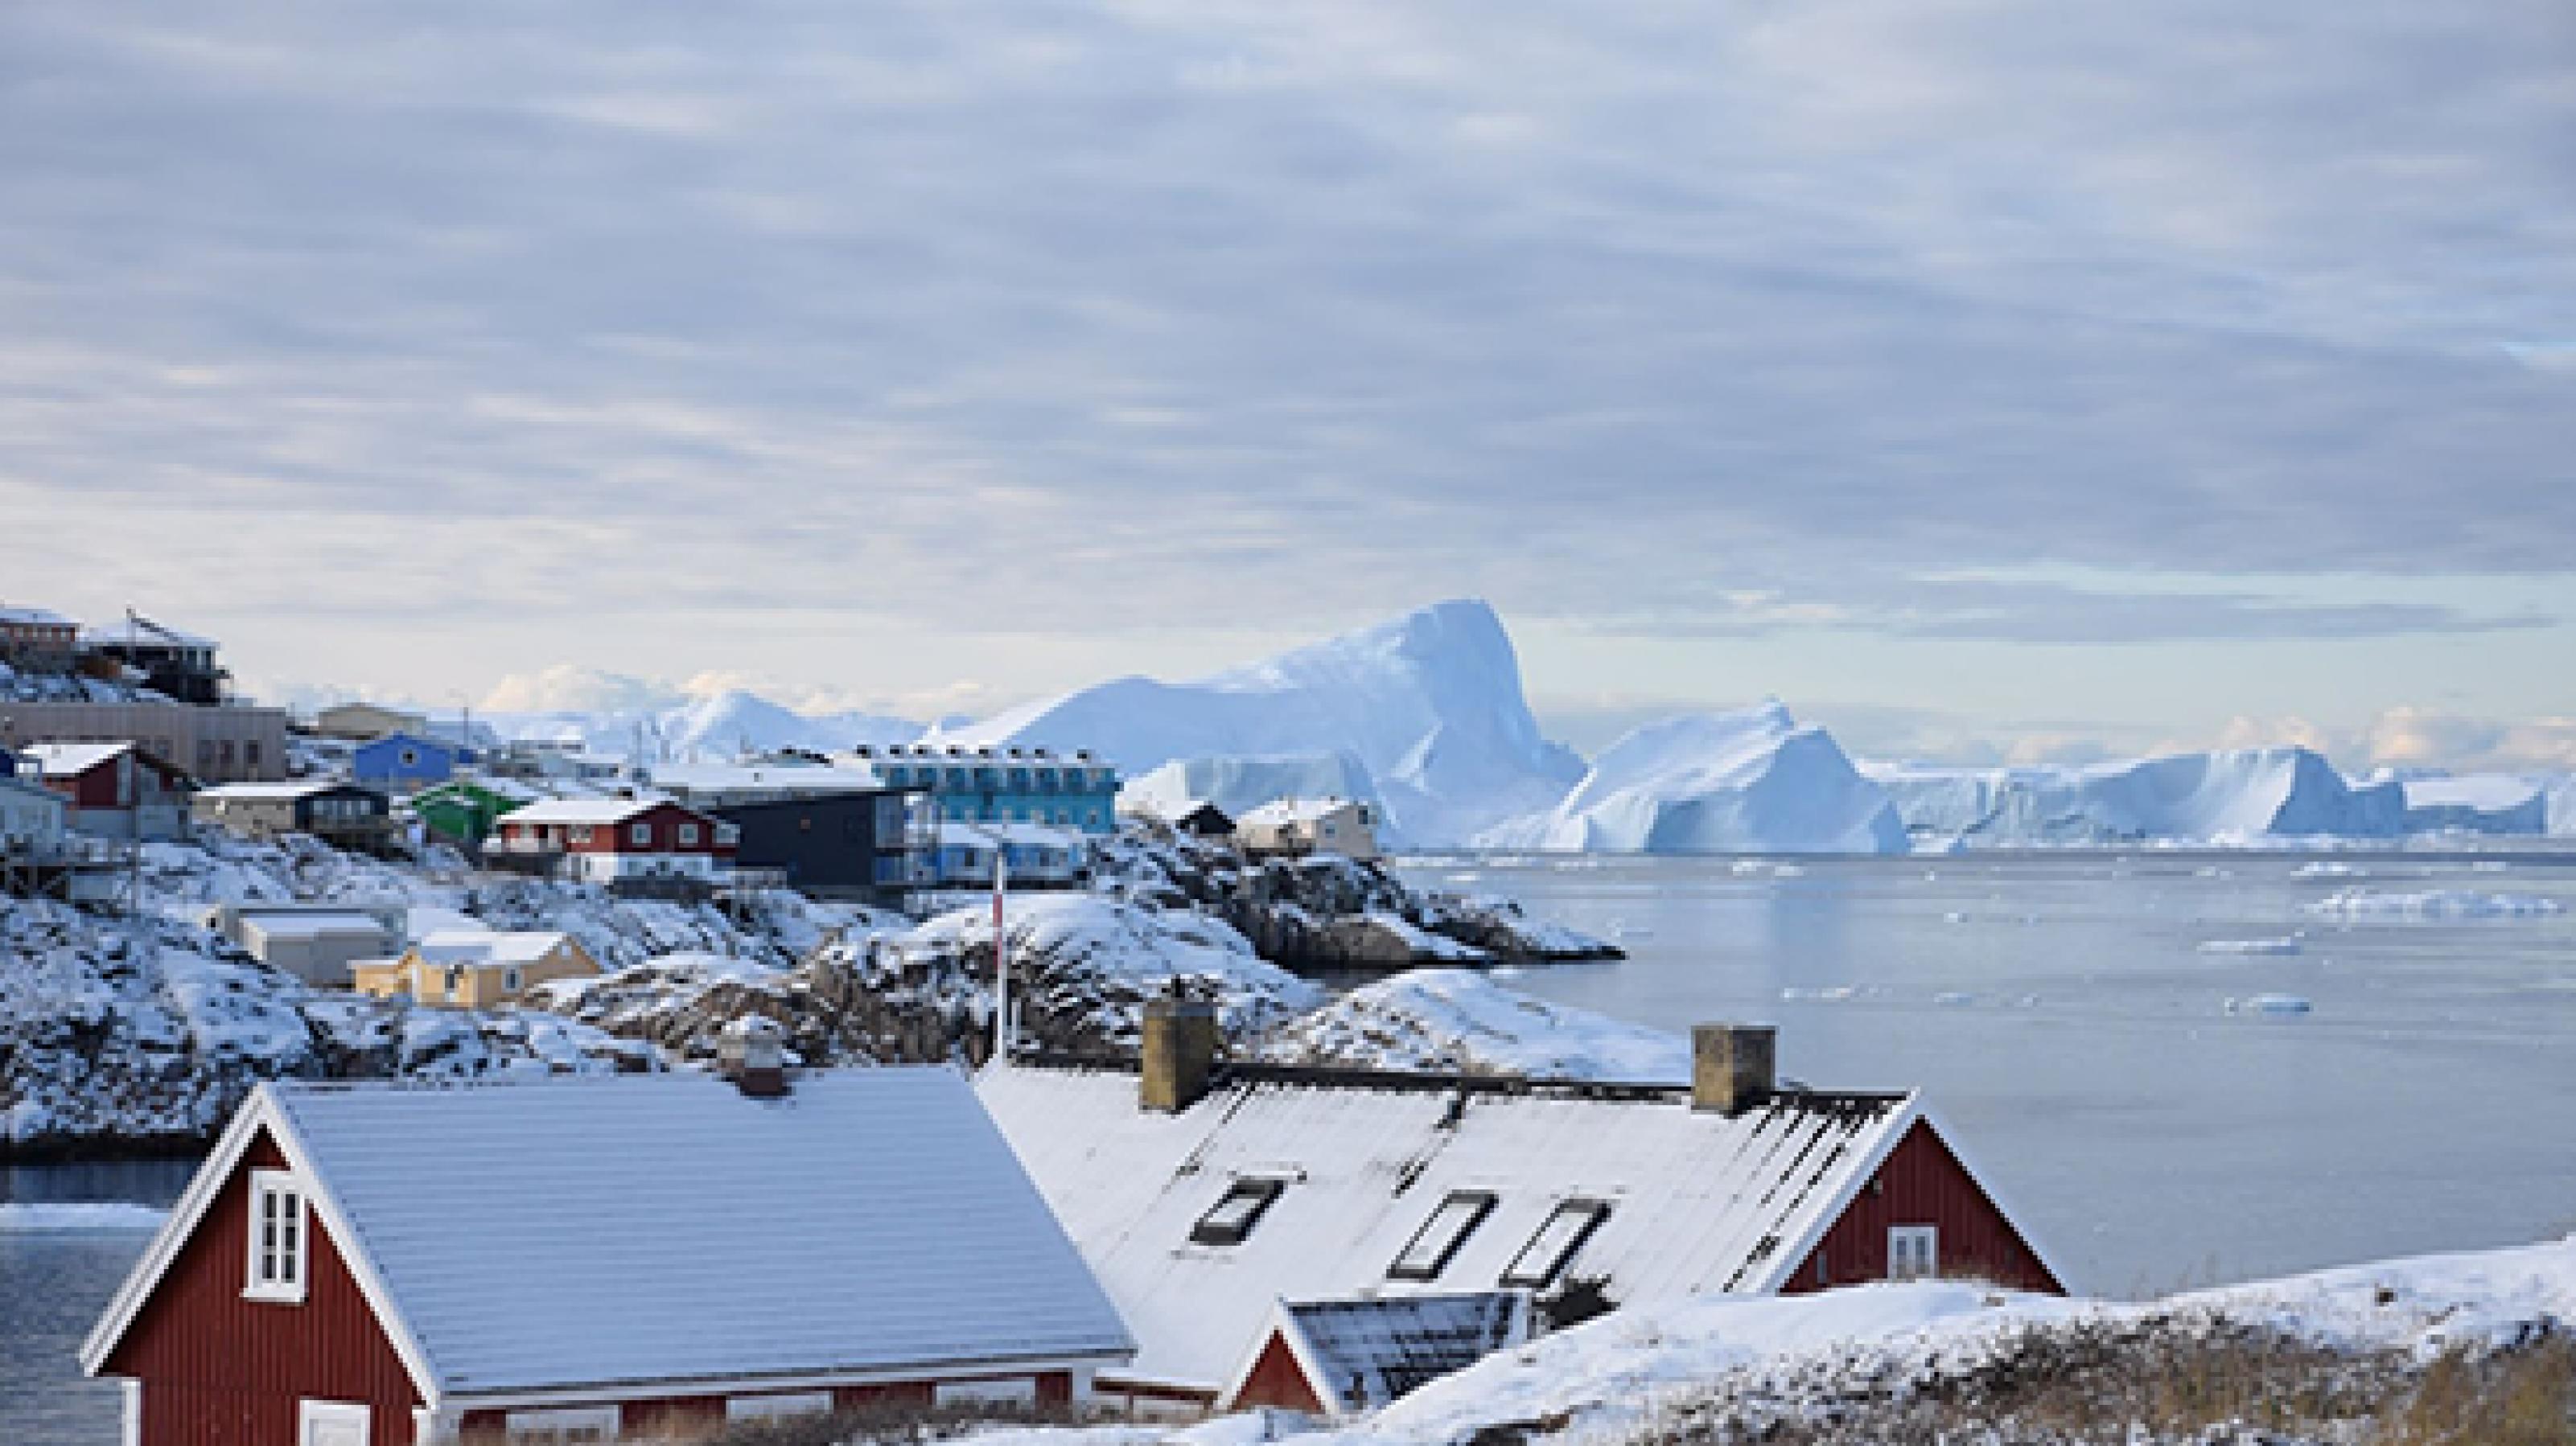 Bunte Häuser im Vordergrund, im Hintergrund sind riesige Eisberge zu sehen